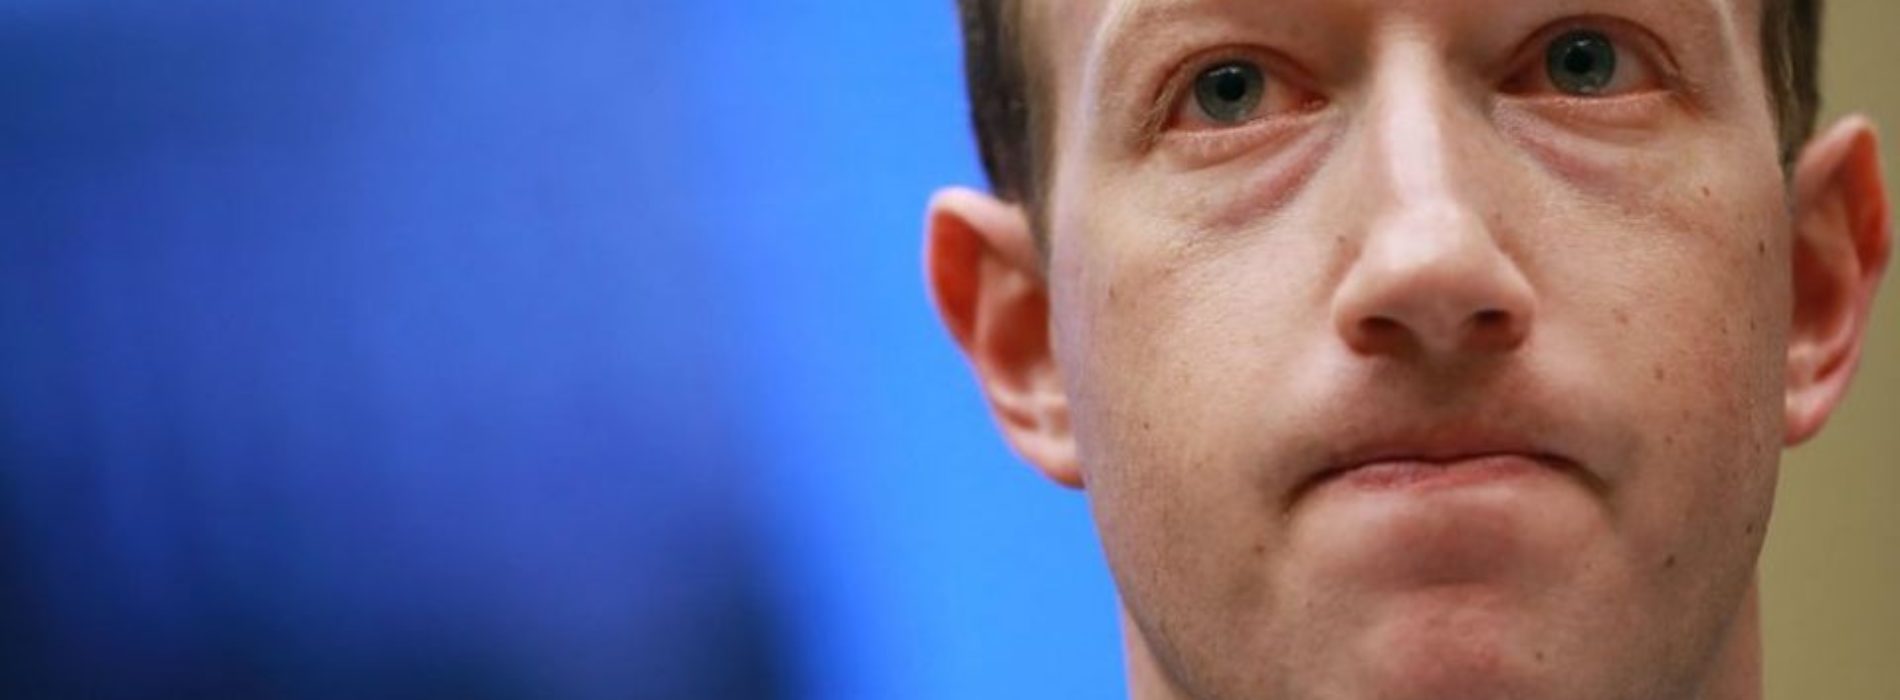 4 cosas que Facebook ha prometido cambiar tras el escándalo
por Cambridge Analytica